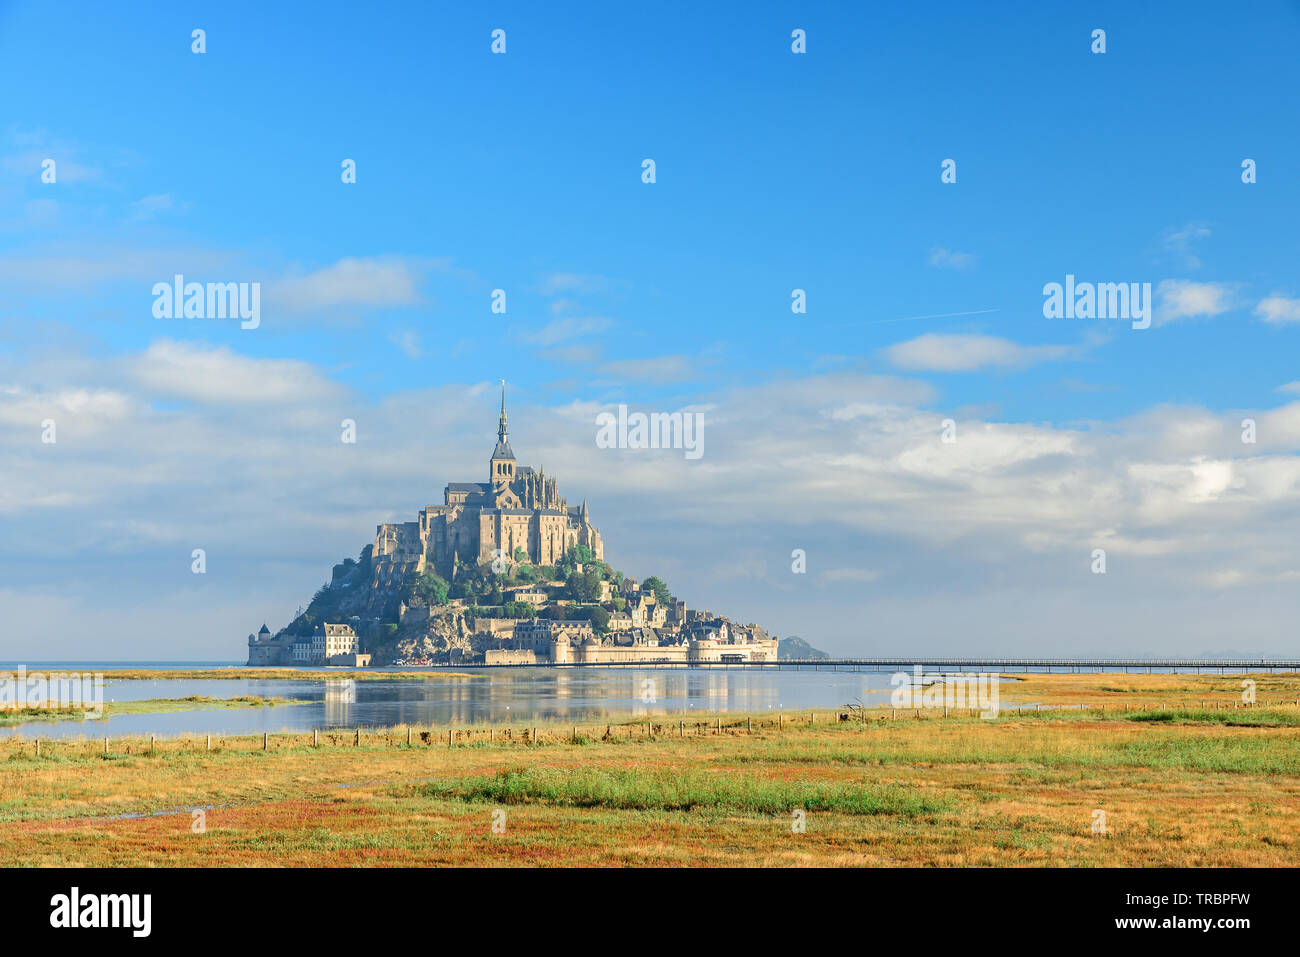 Le Mont Saint Michel l'abbaye sur l'île, la Normandie, le nord de la France, l'Europe au lever du soleil Banque D'Images